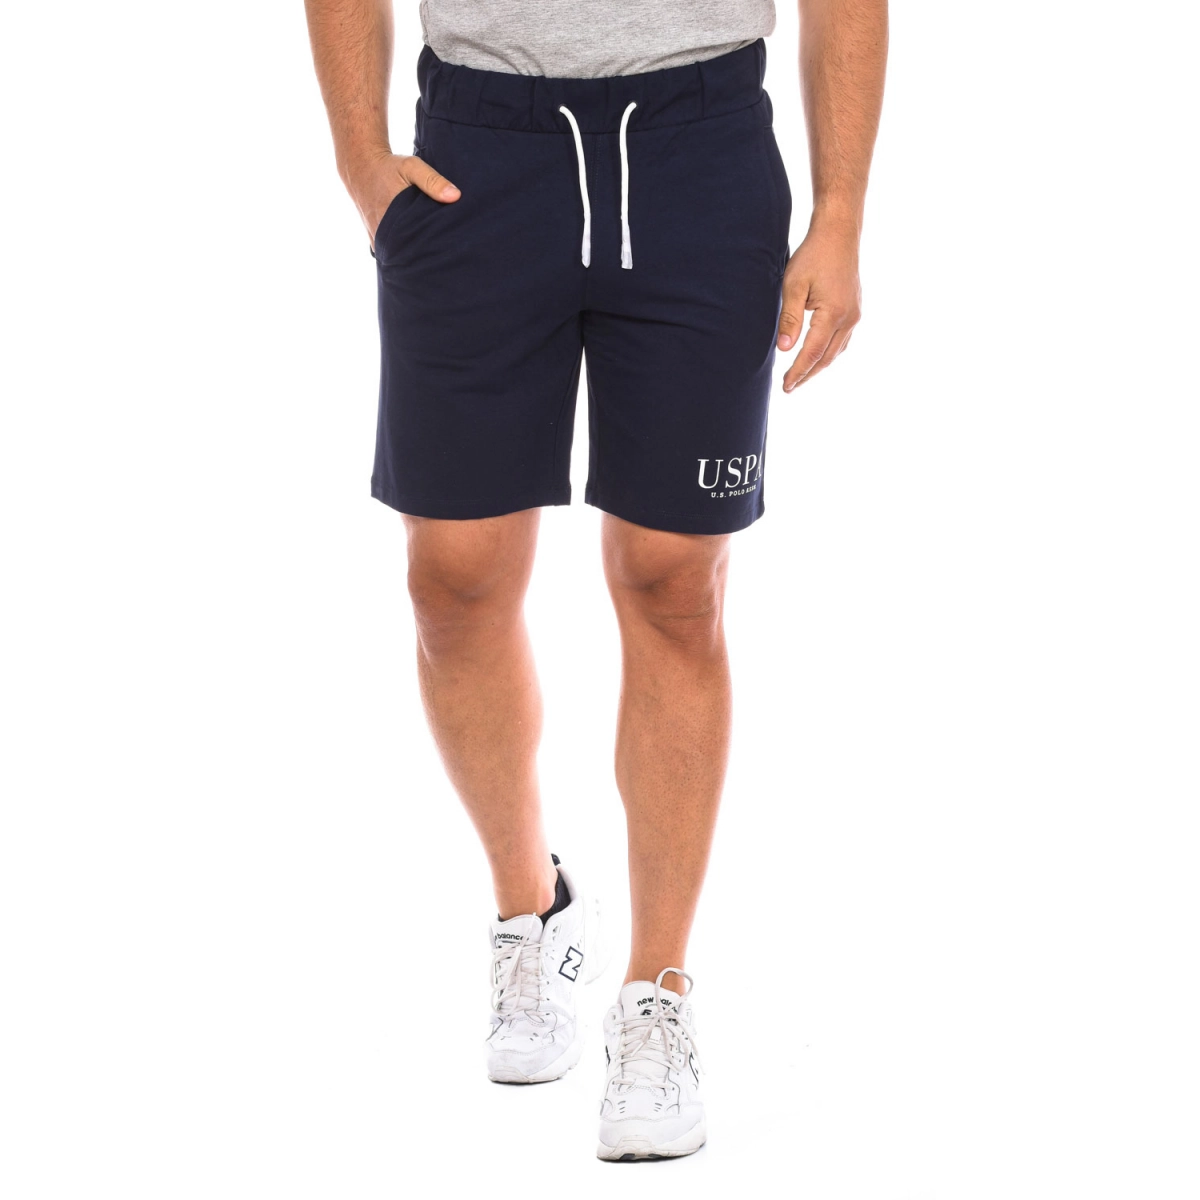 Pantalón corto deportivo U.S. POLO ASSN. 67935 hombre Talla: L Color: Azul